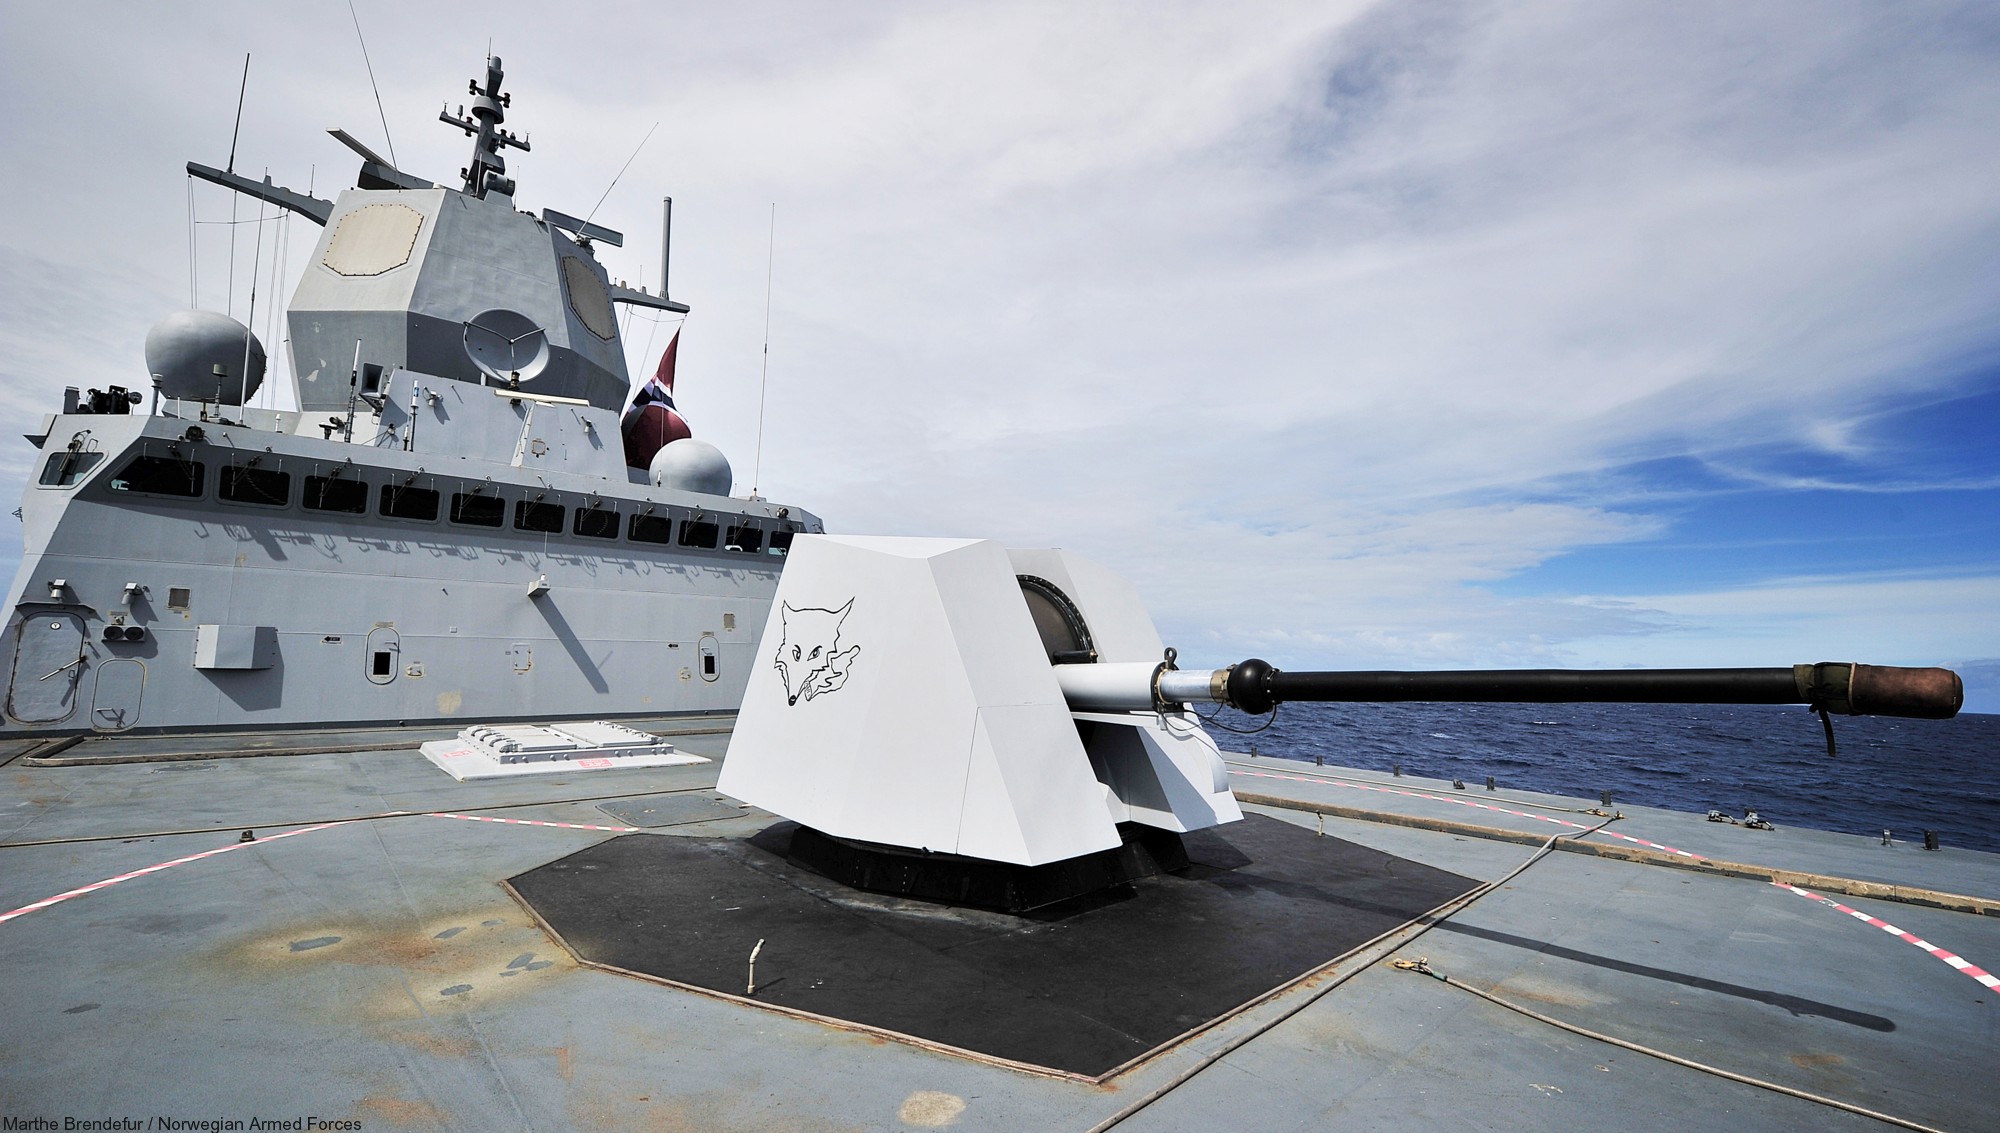 f-310 fridtjof nansen hnoms knm frigate royal norwegian navy sjoforsvaret 38 oto-melara 76/62 gun